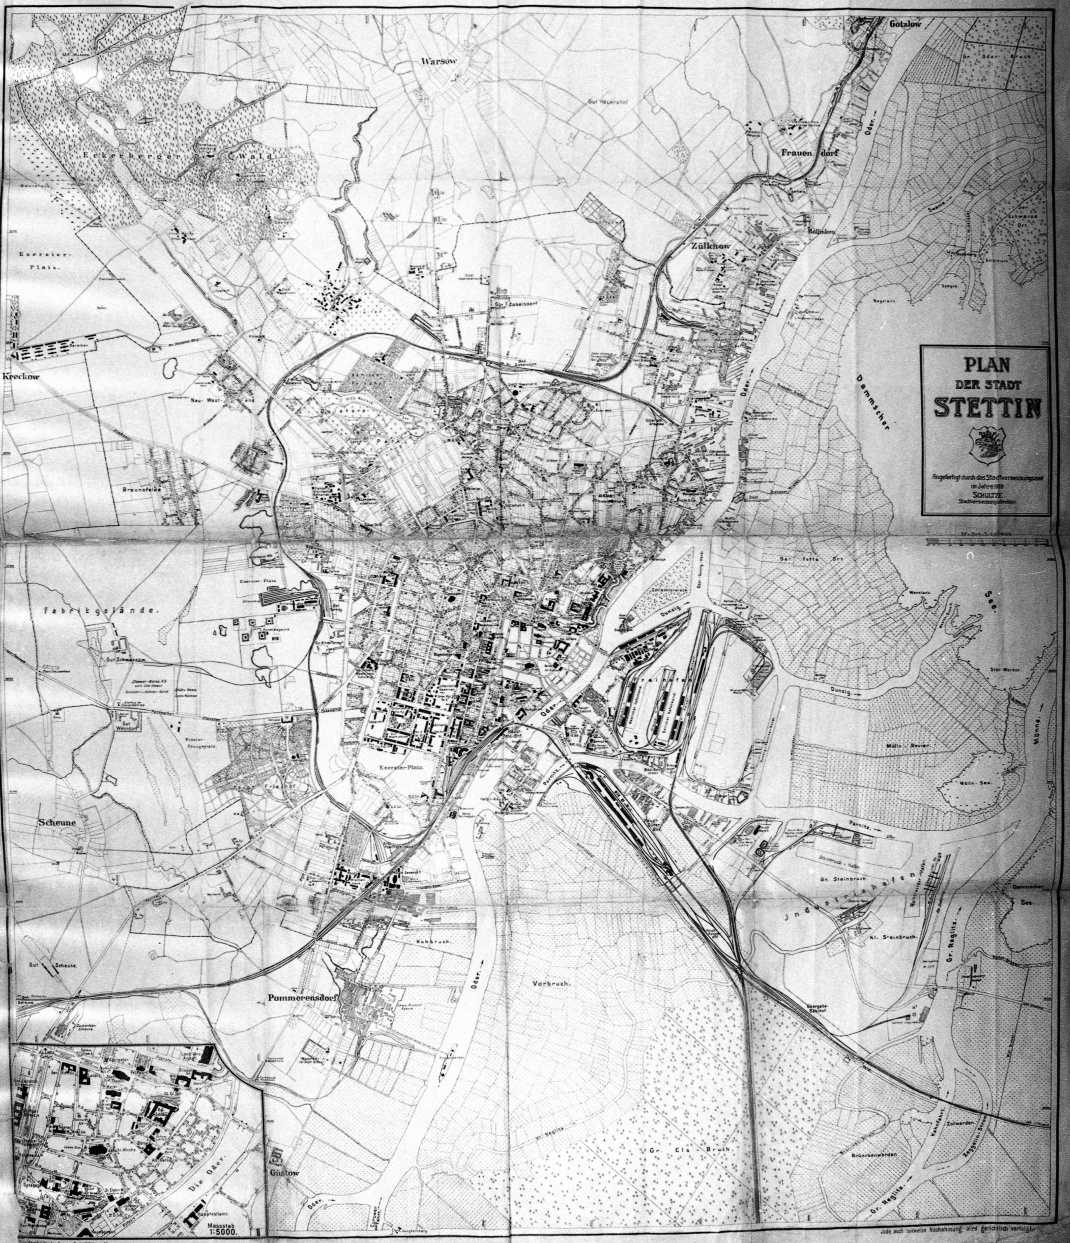 Plany historyczne rozwoju przestrzennego Szczecina - 1919 r.